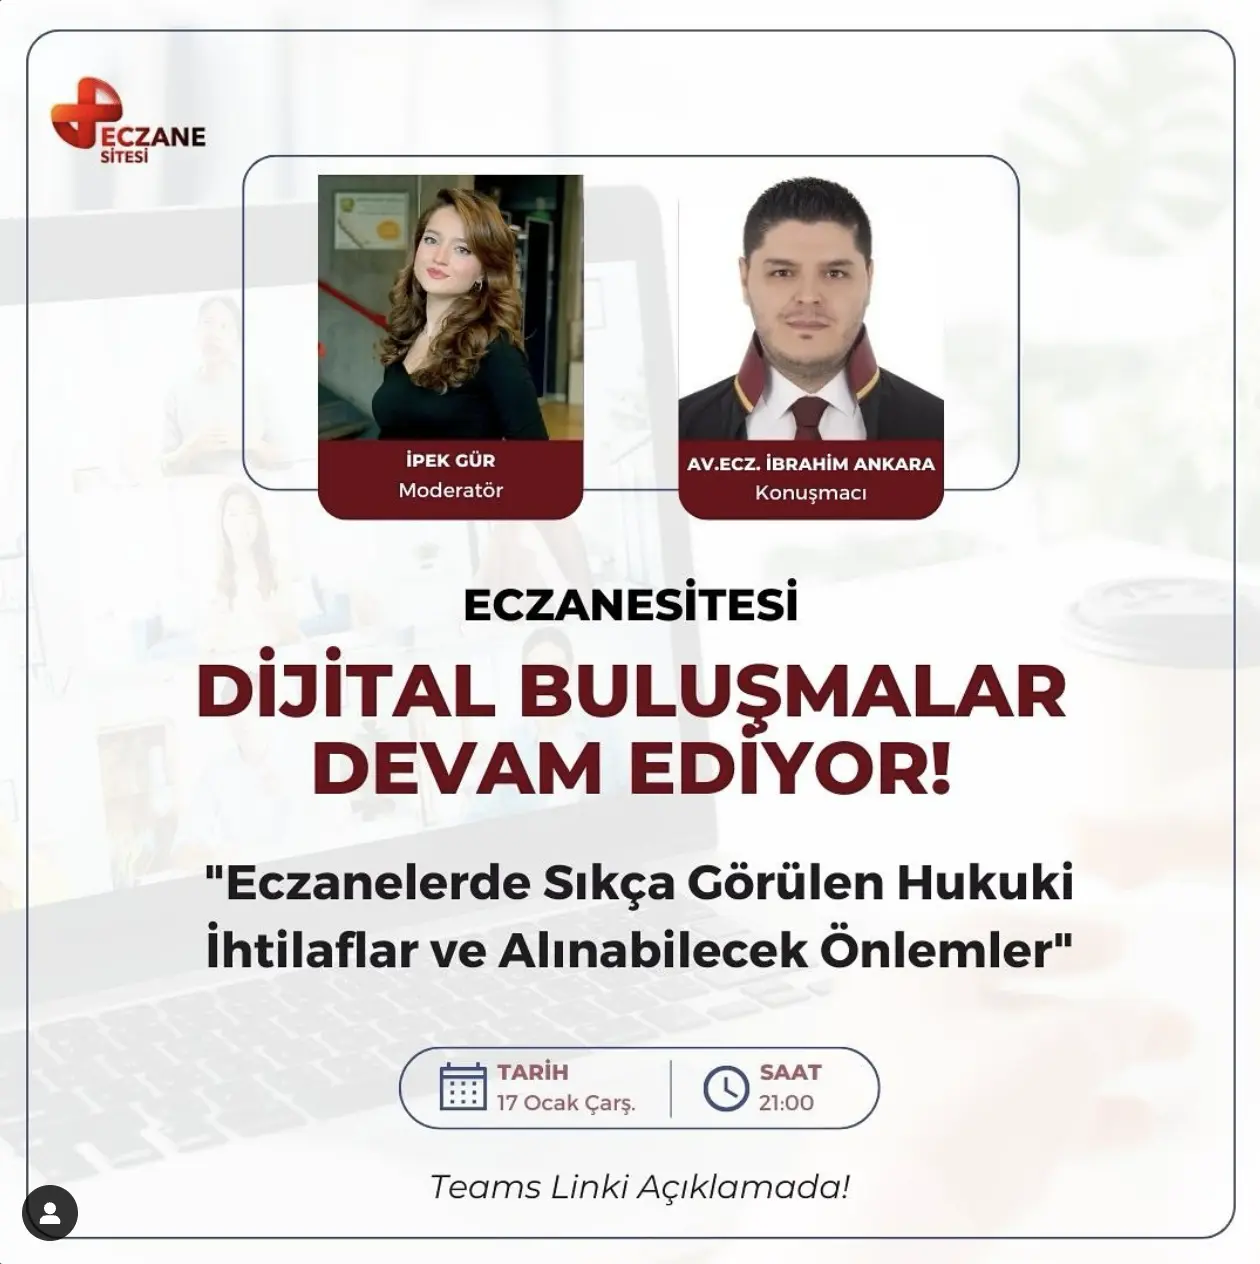 Eczanelerde Sıkça Görülen Hukuki İhtilaflar ve Alınabilecek Önlemler - Av. Ecz. İbrahim Ankara